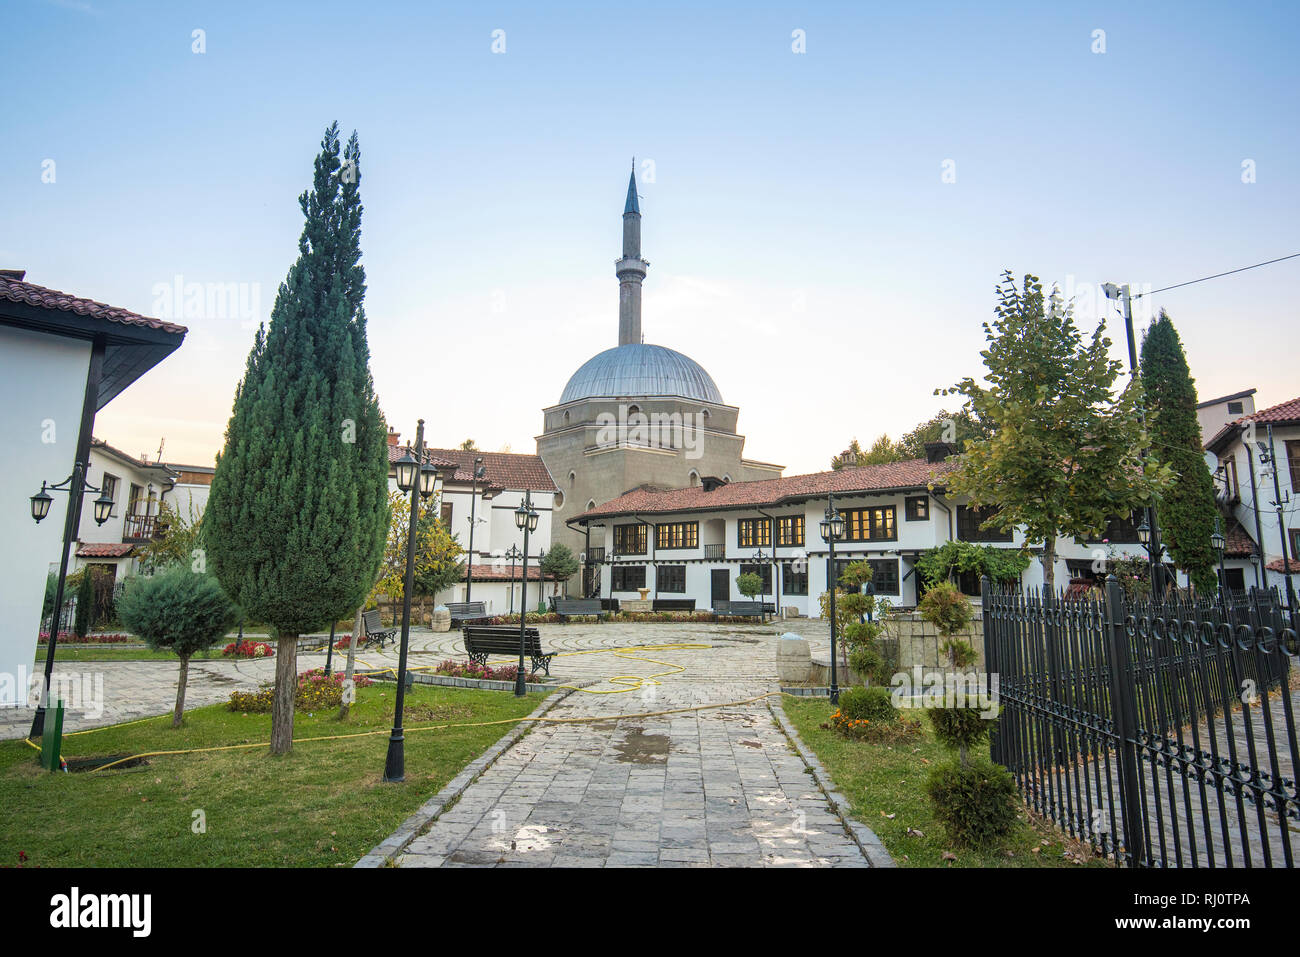 Complesso della lega albanese di Prizren e Moschea Bajrakli, il complesso è un complesso architettonico,nel centro della città vecchia in Kosovo Foto Stock